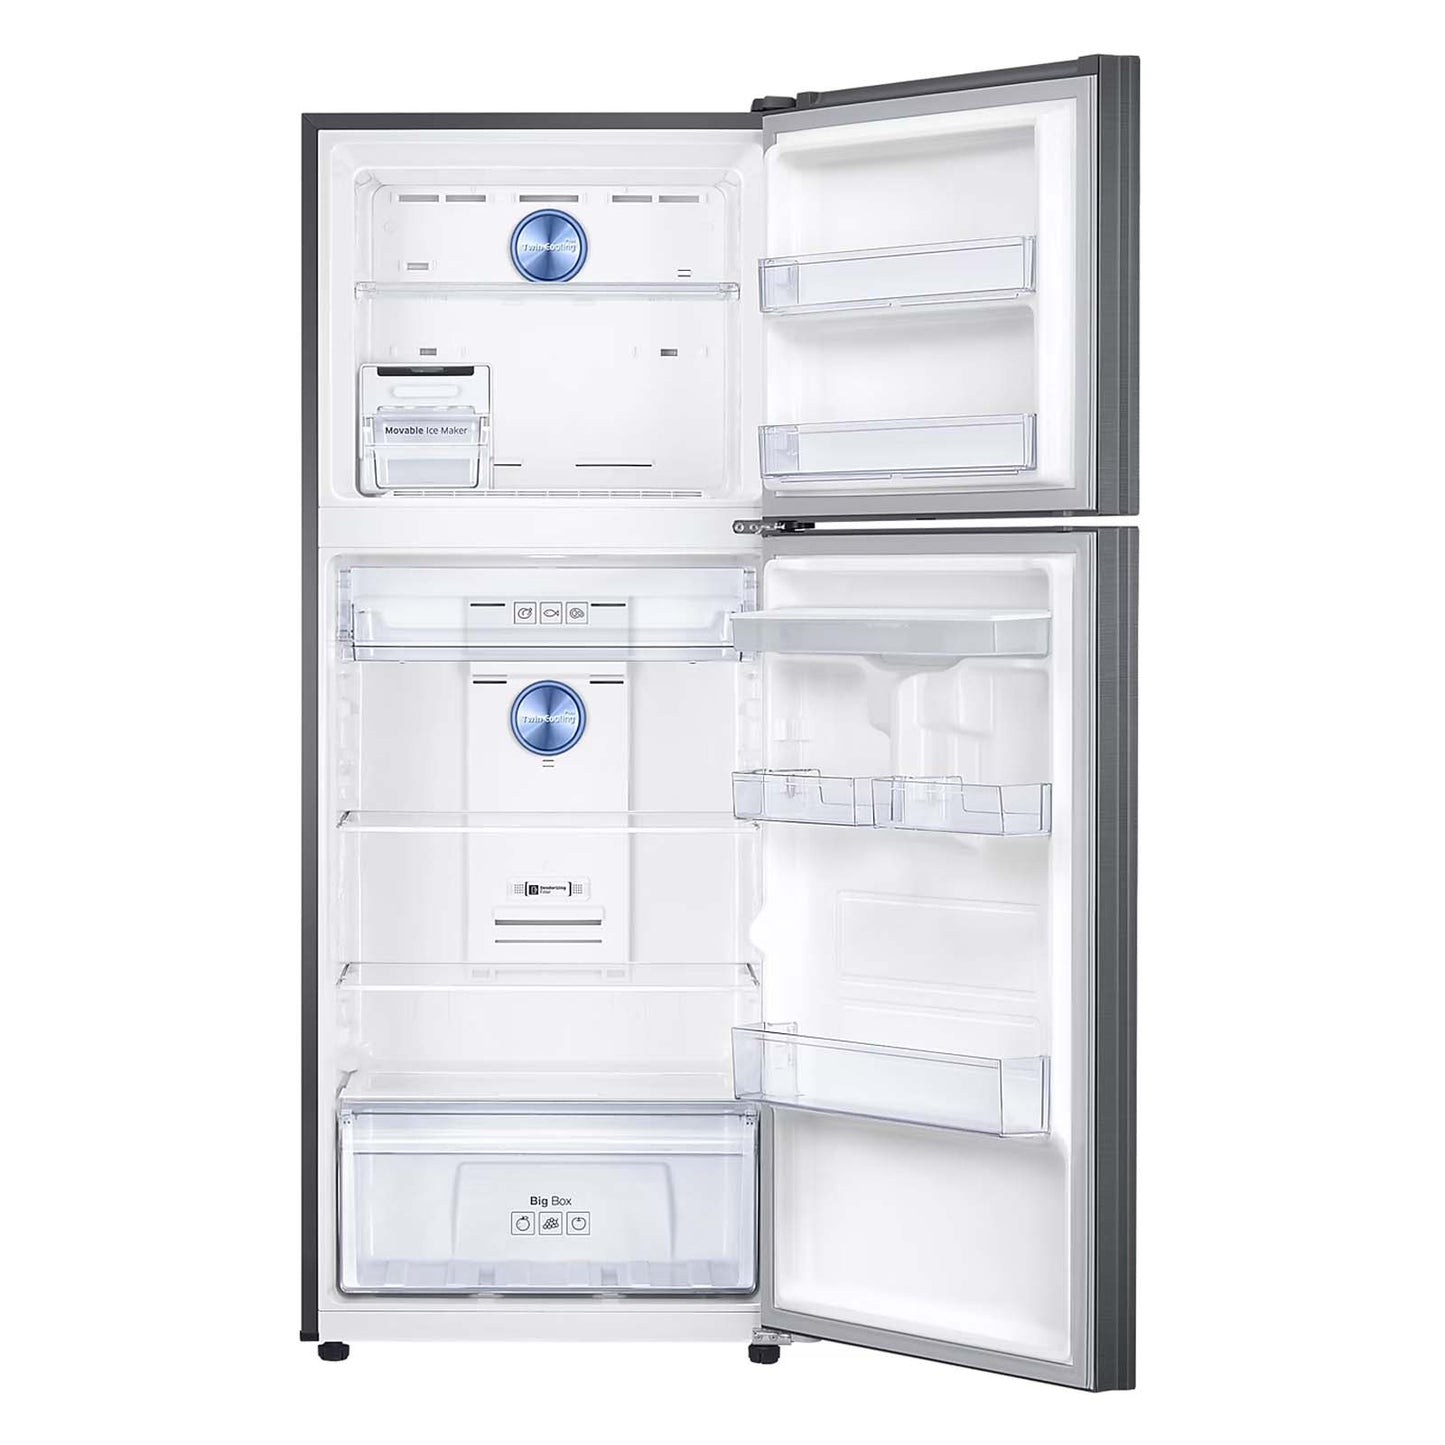 Refrigerador Samsung Top Mount 14 Pies Cúbicos Negro con Despachador de Agua RT38A5930BS